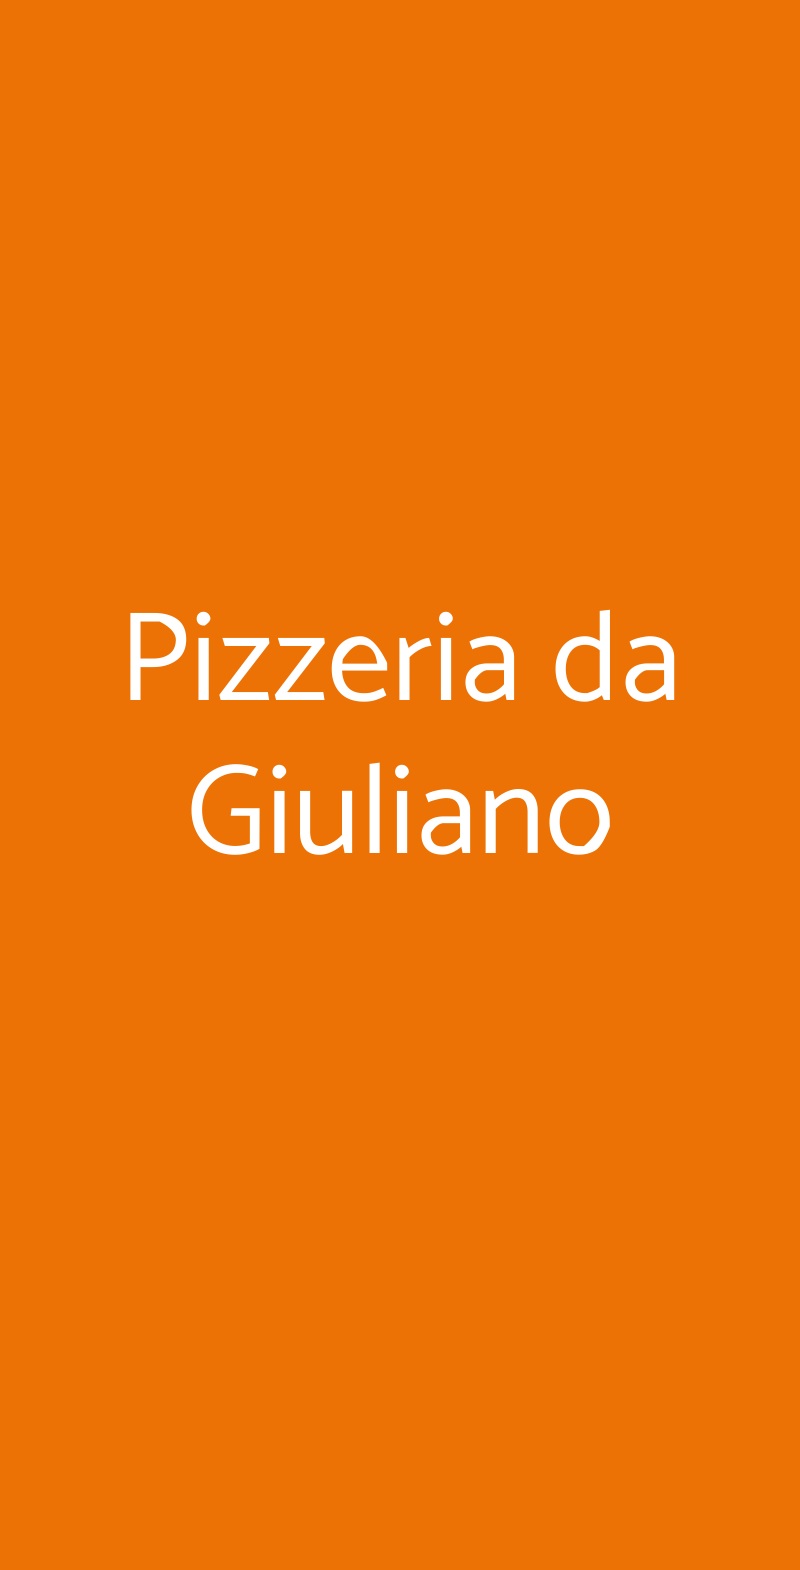 Pizzeria da Giuliano Milano menù 1 pagina